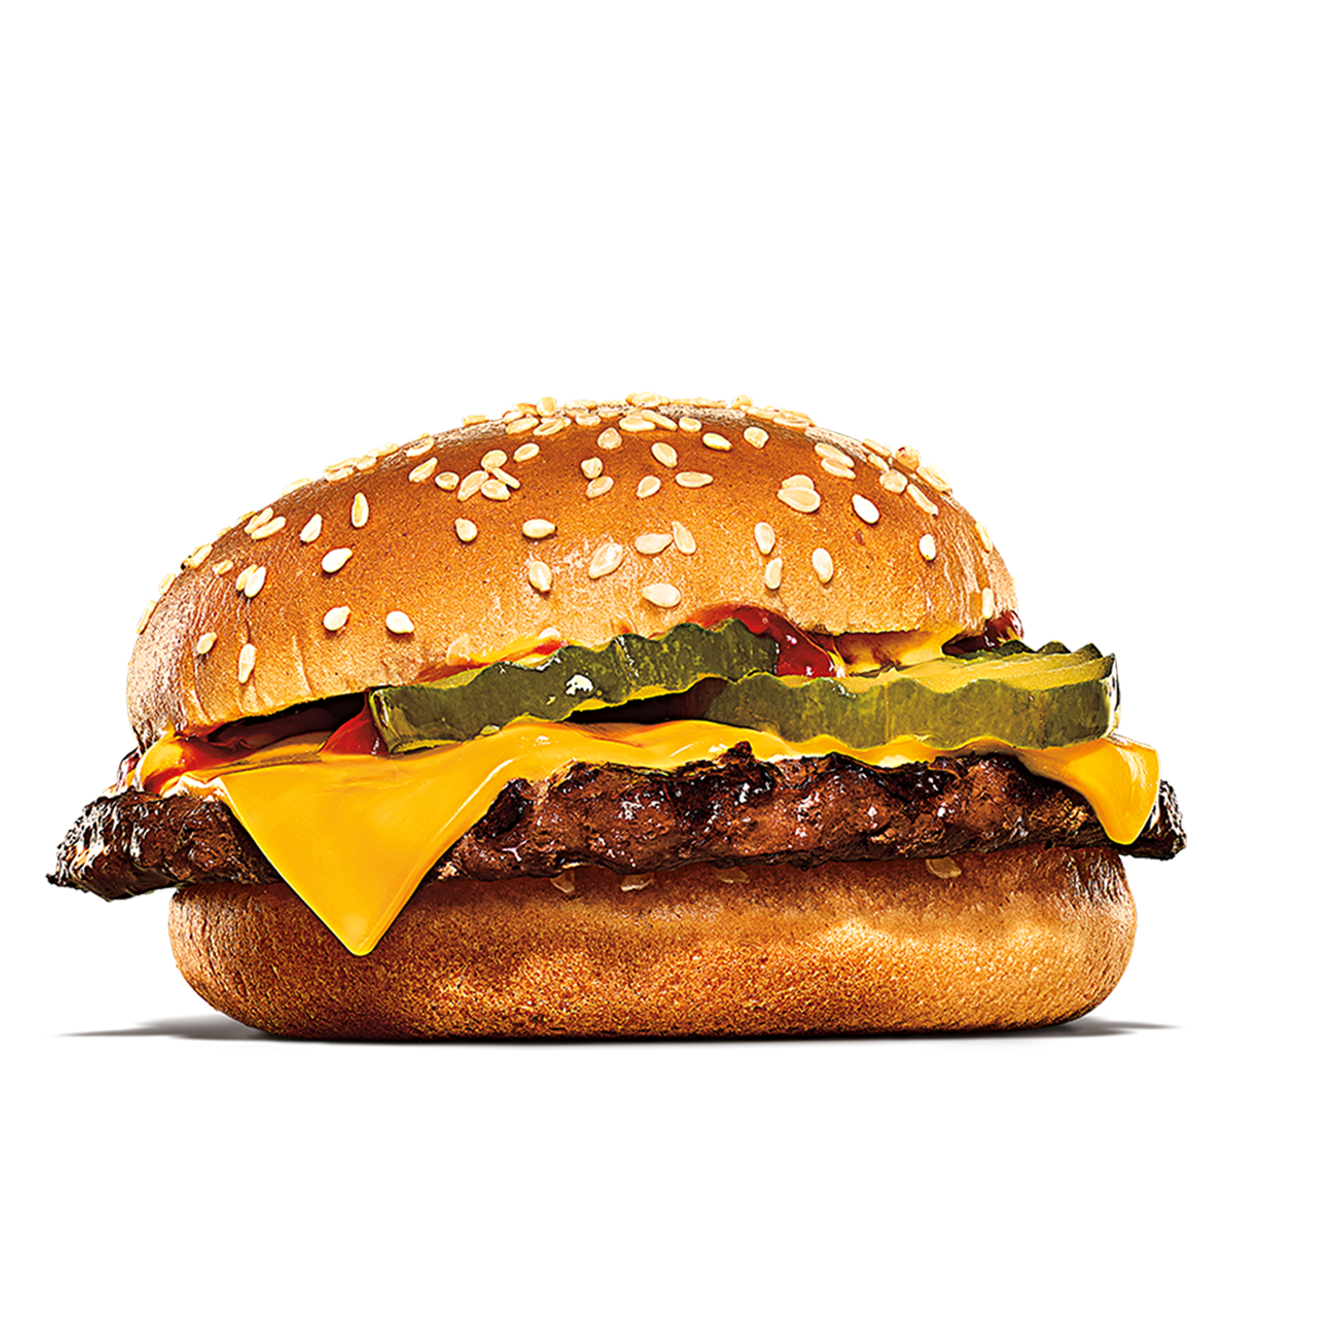 Burger King Port Jervis (845)856-2012